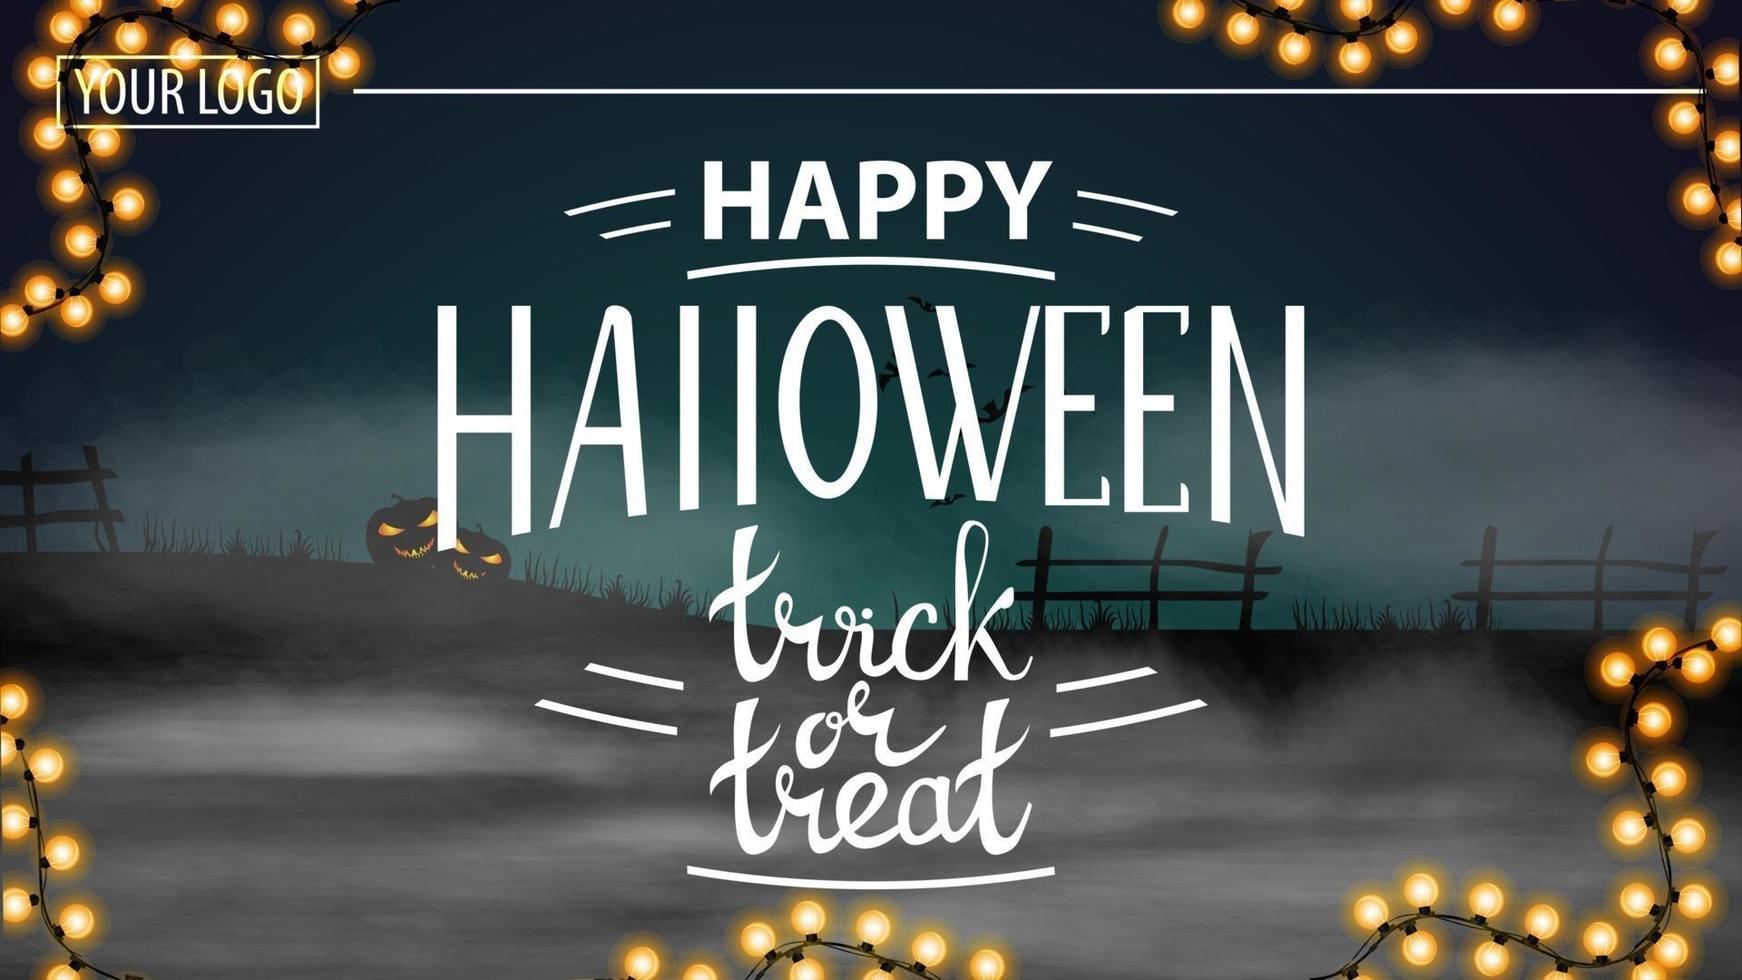 buon halloween, dolcetto o scherzetto, moderna cartolina di auguri orizzontale con un bellissimo paesaggio notturno di halloween vettore